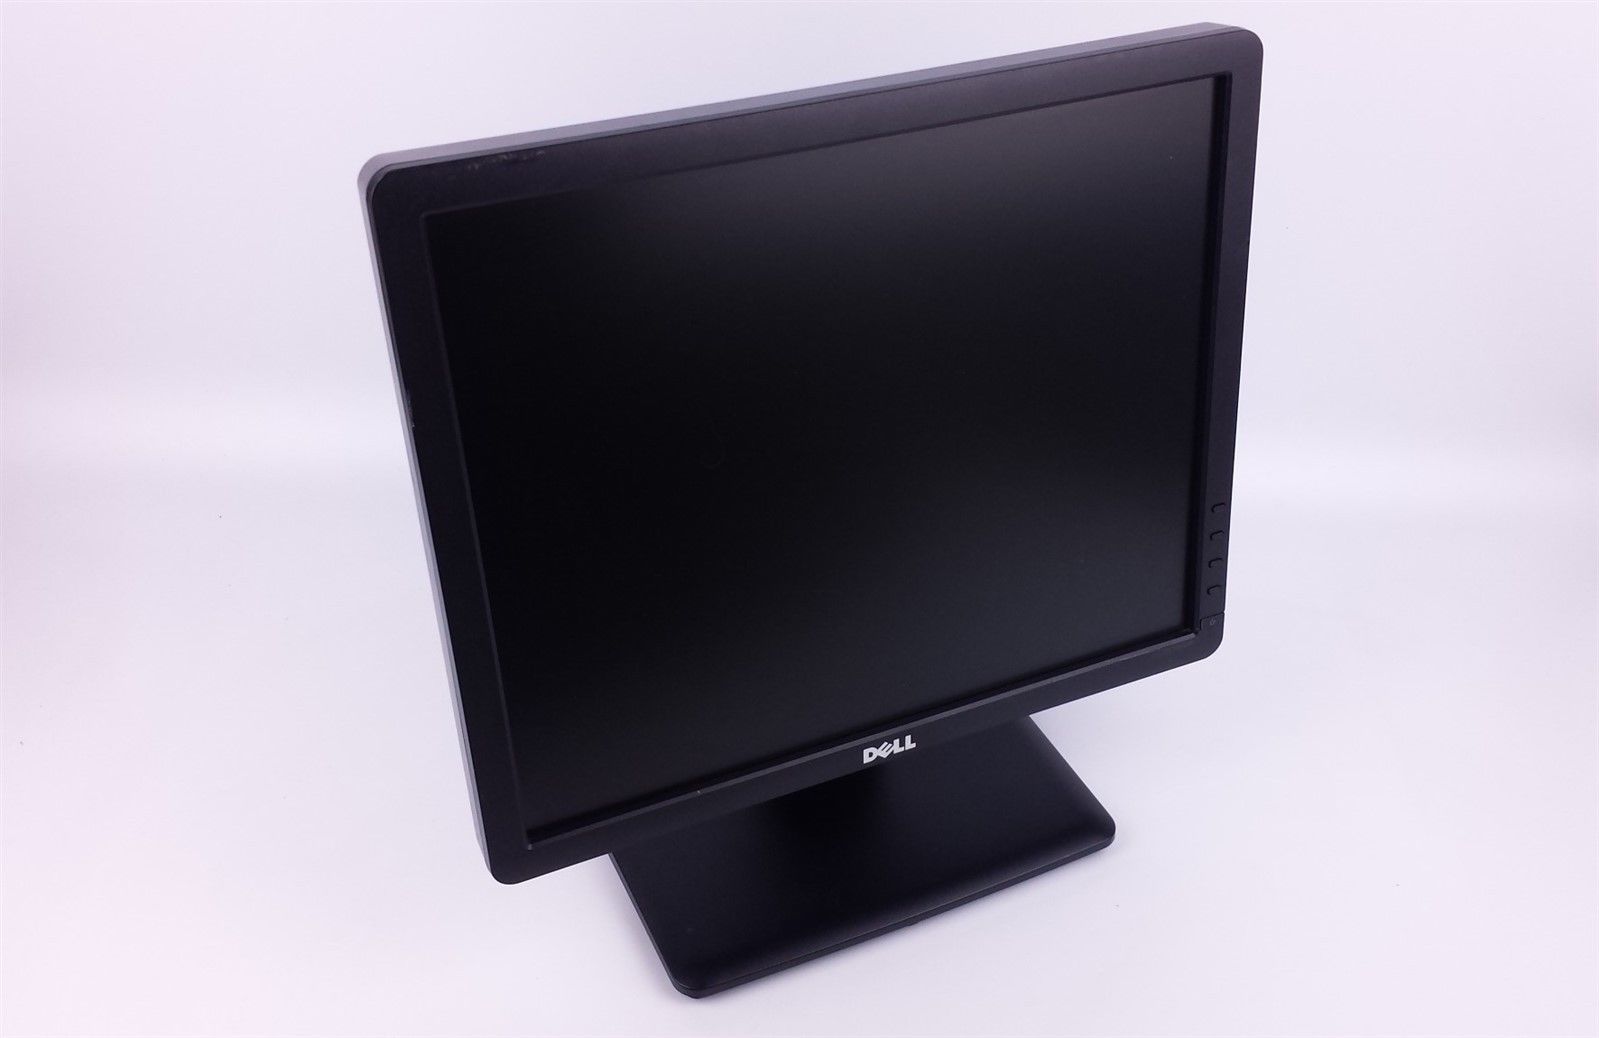 Dell E Series E1713Sb Flat Screen LCD Computer Monitor 17" HX1KW w/ Cables